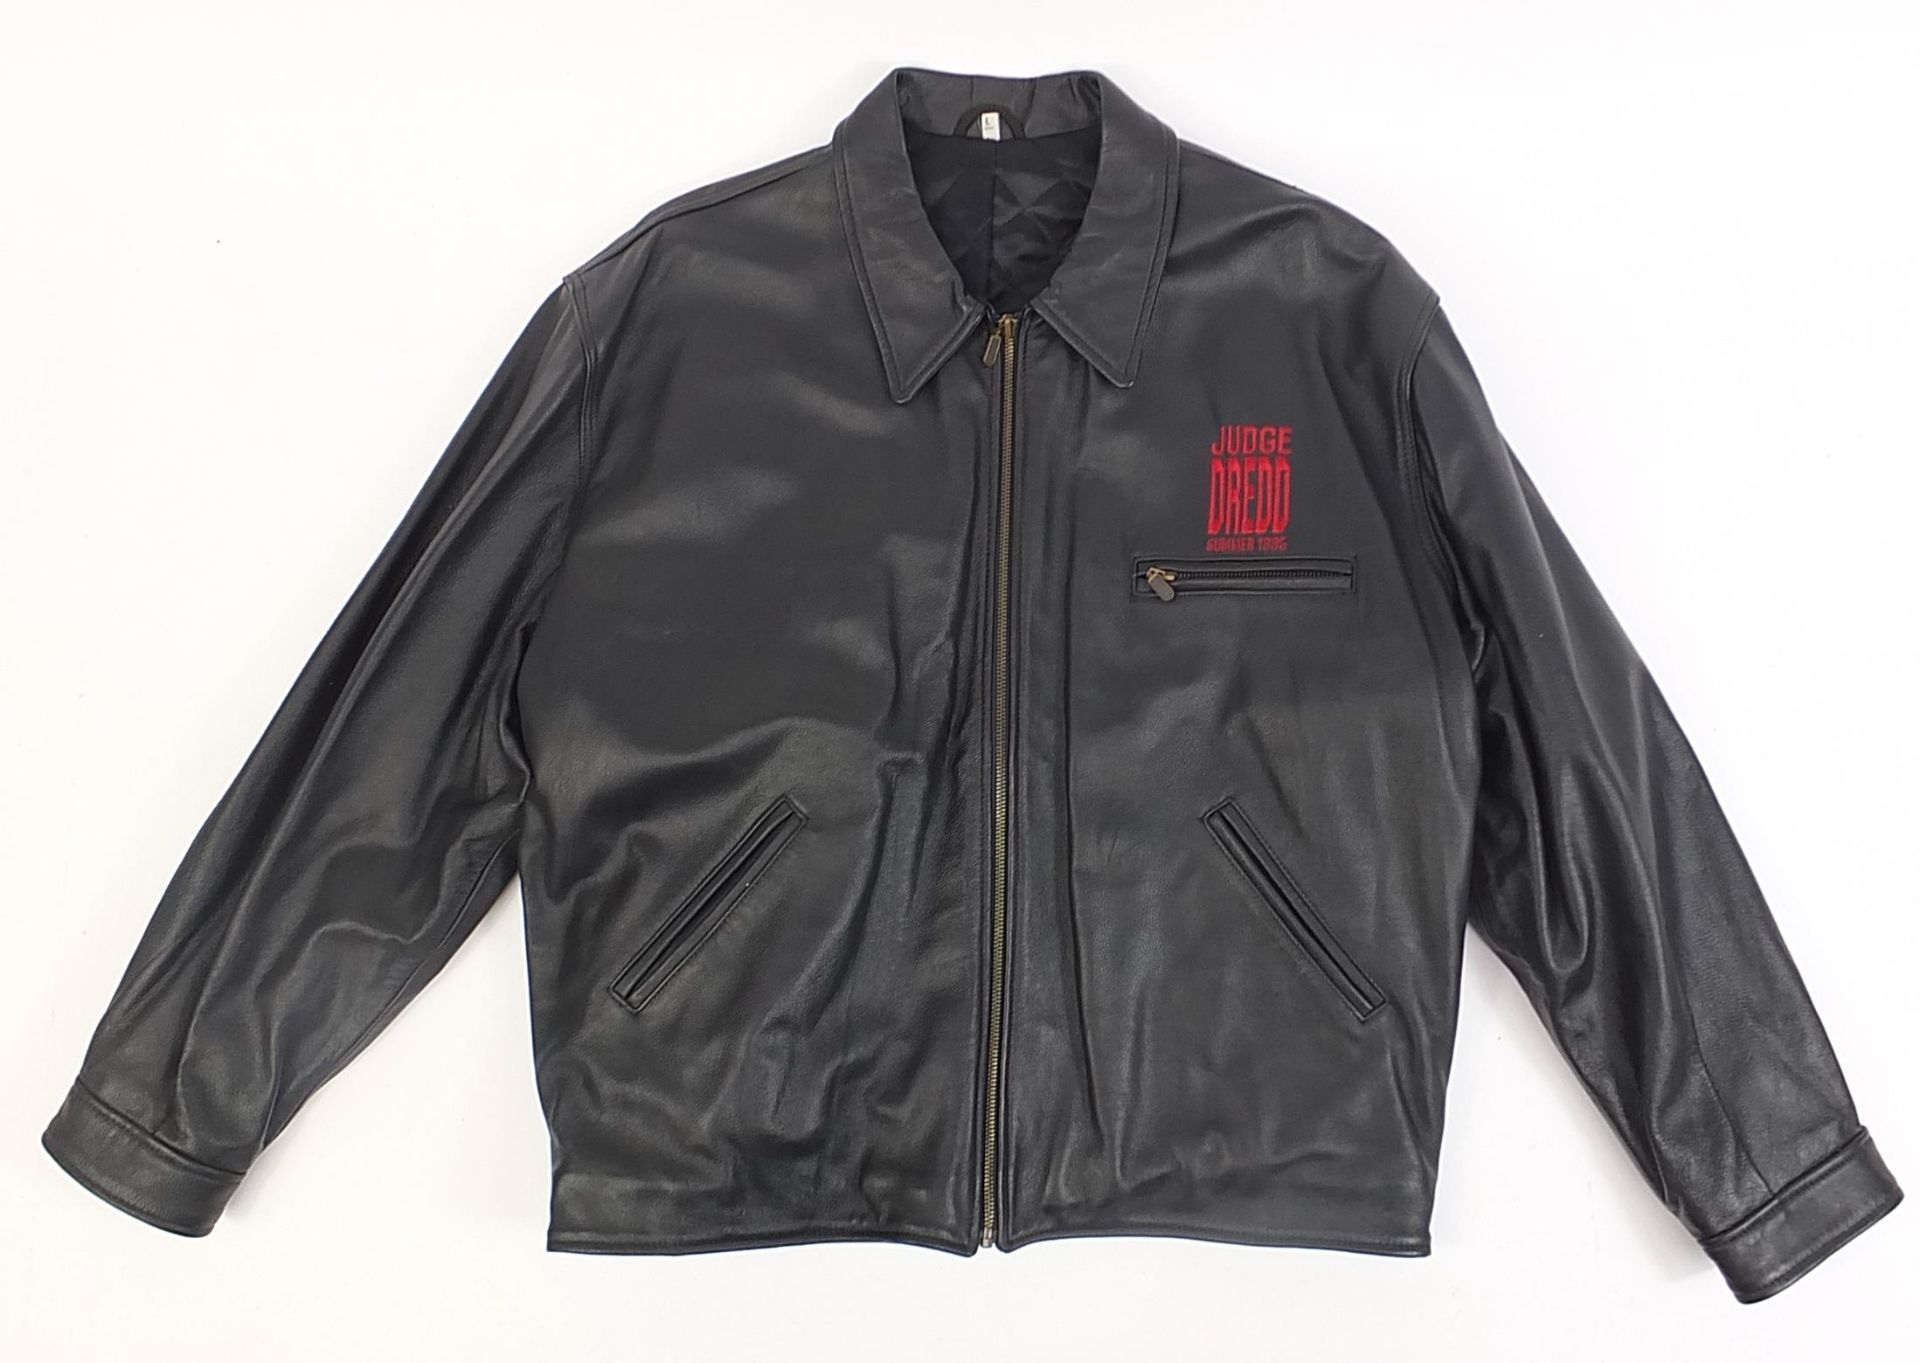 Judge Dredd Summer 1995 leather jacket, size L